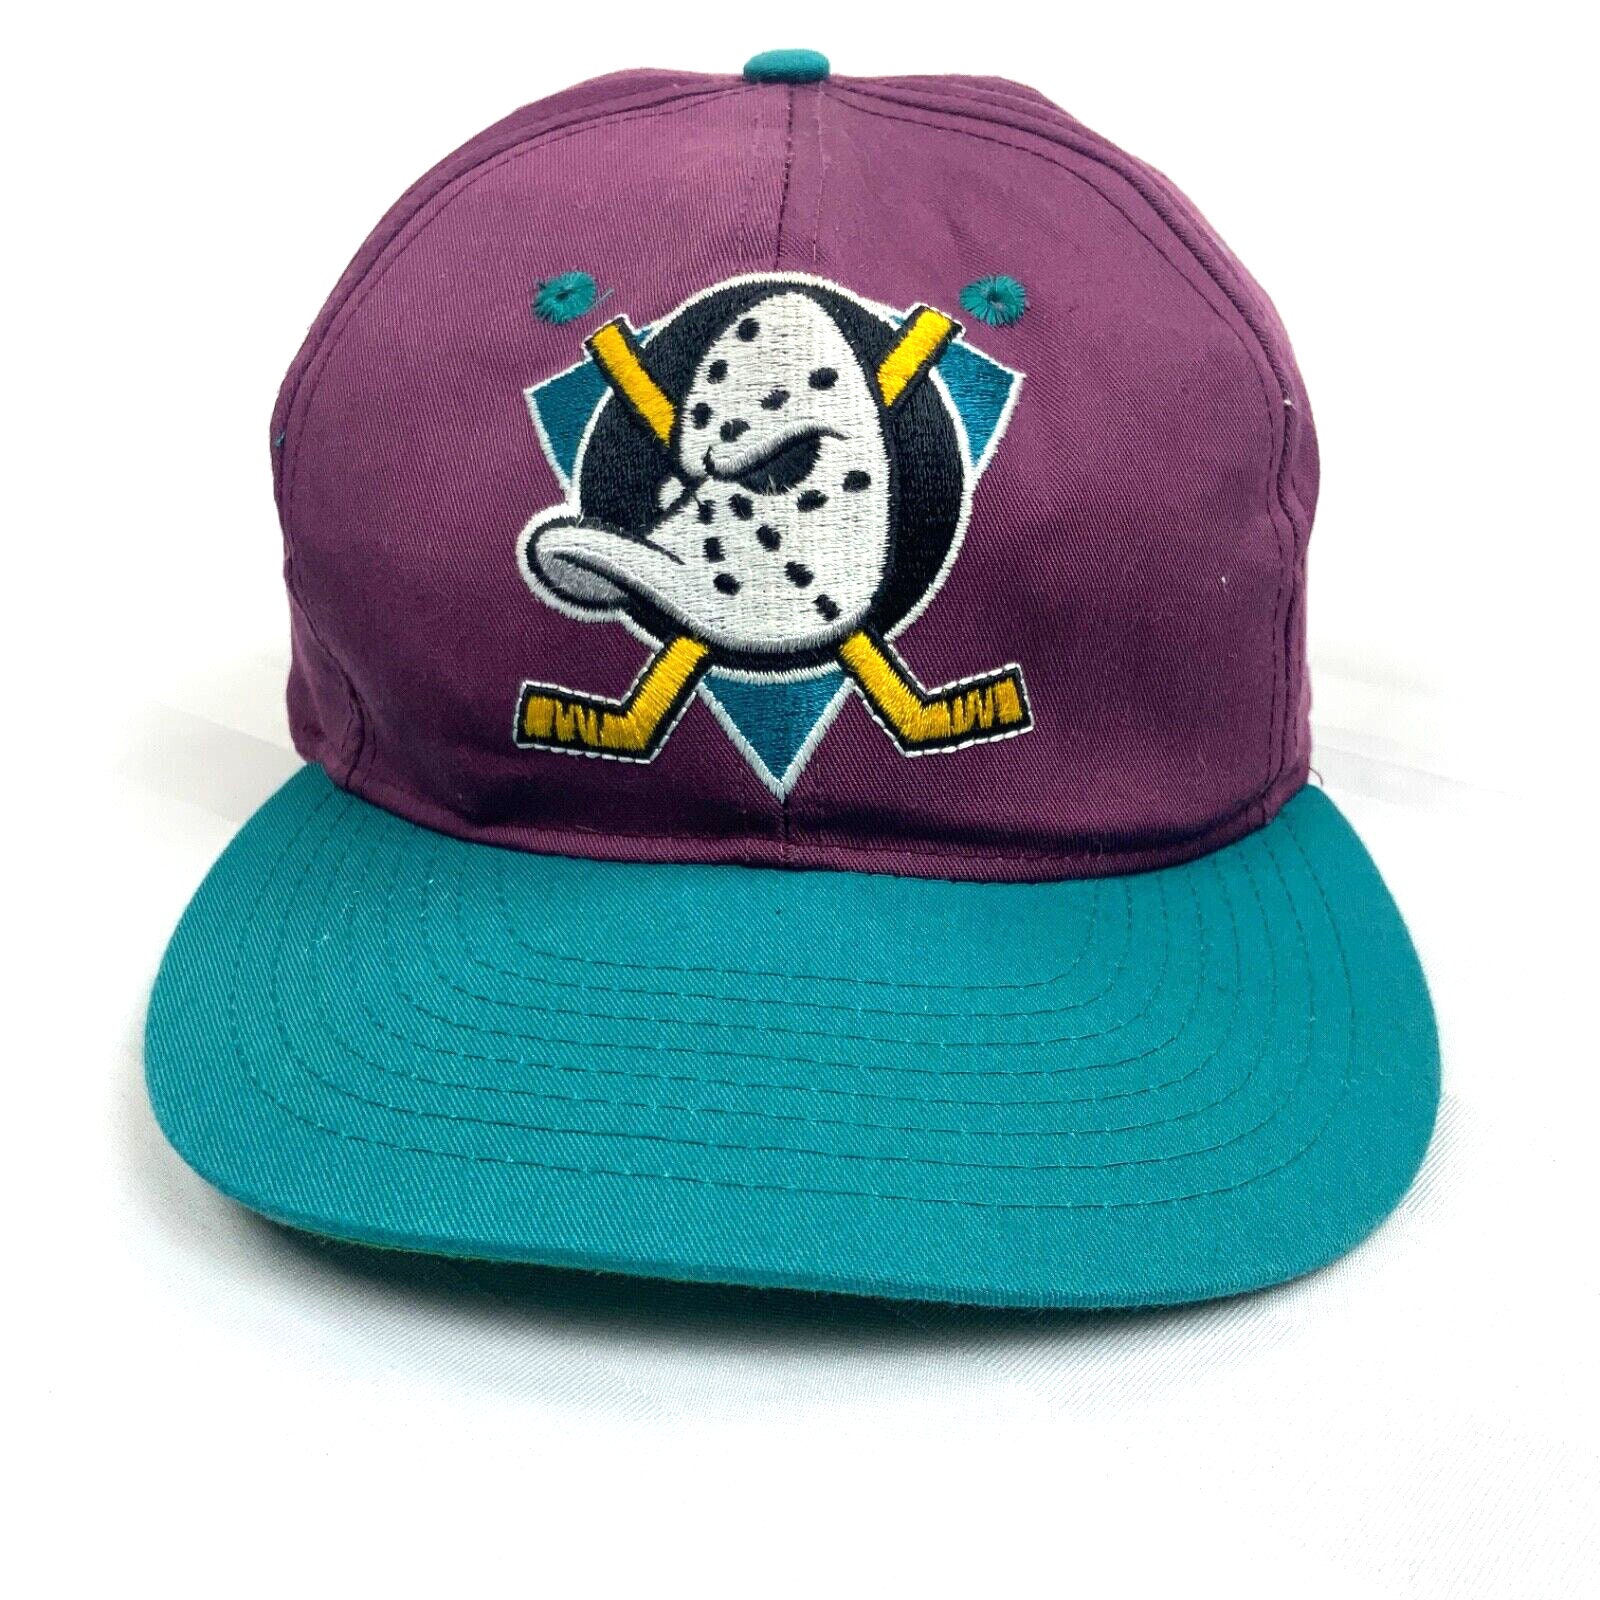 Deadstock Anaheim Mighty Ducks Snapback Hat Wool American 